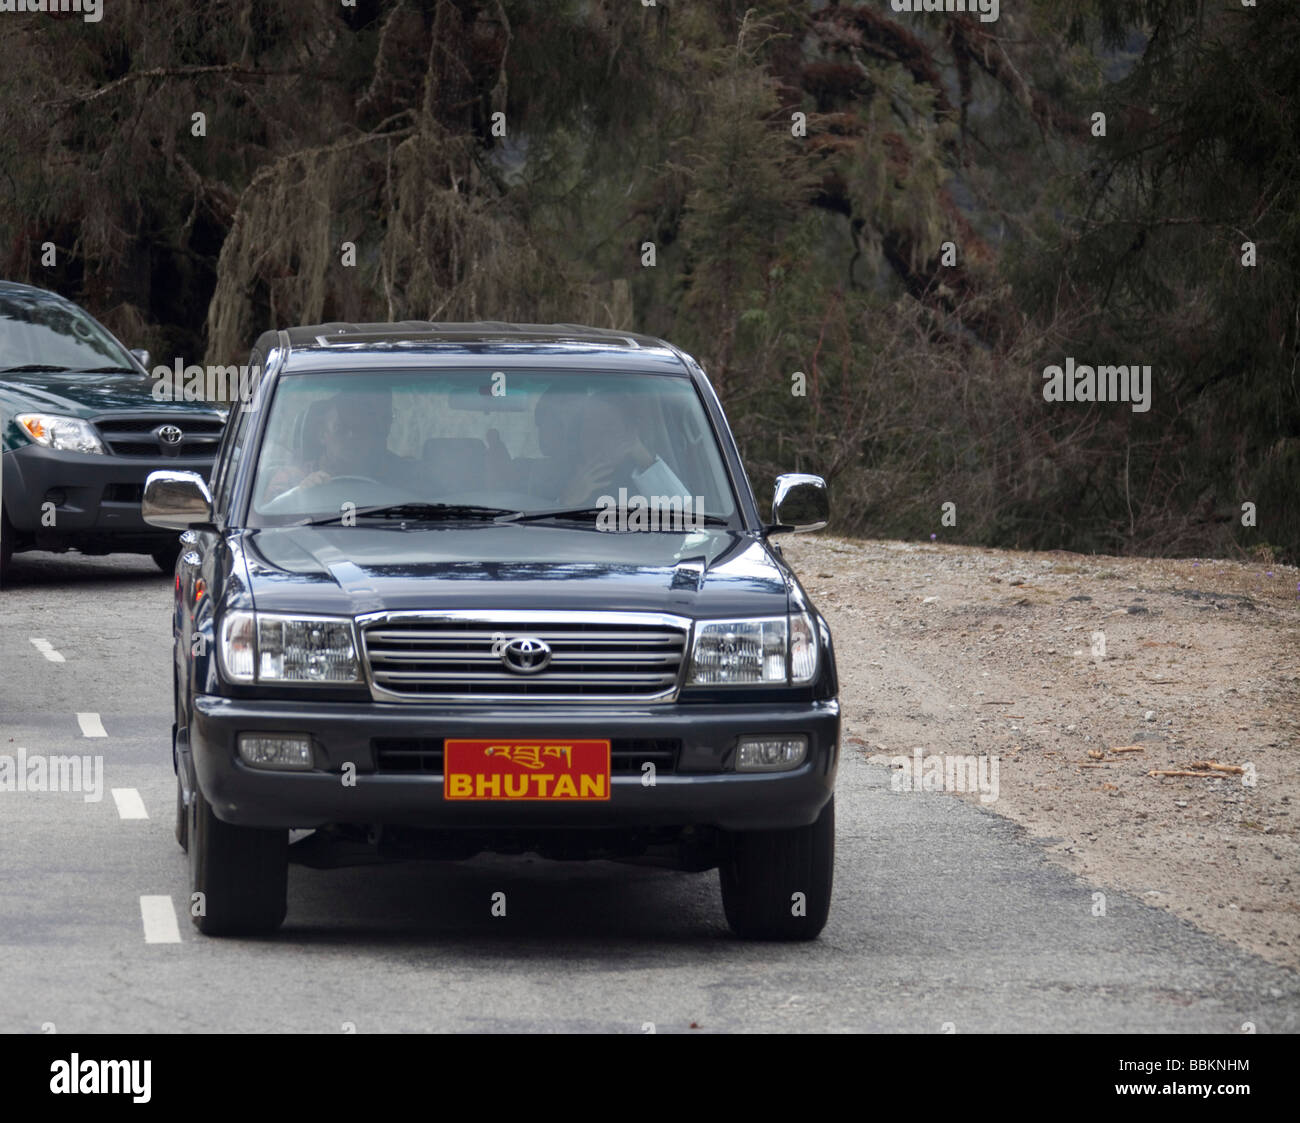 Re di Bhutan alla guida di una Toyota Amazon, 4x4Toyota Amazon 4x4 auto, re  di Bhutan alla guida, il numero di targa del re 91462 Bhutan-re Foto stock  - Alamy